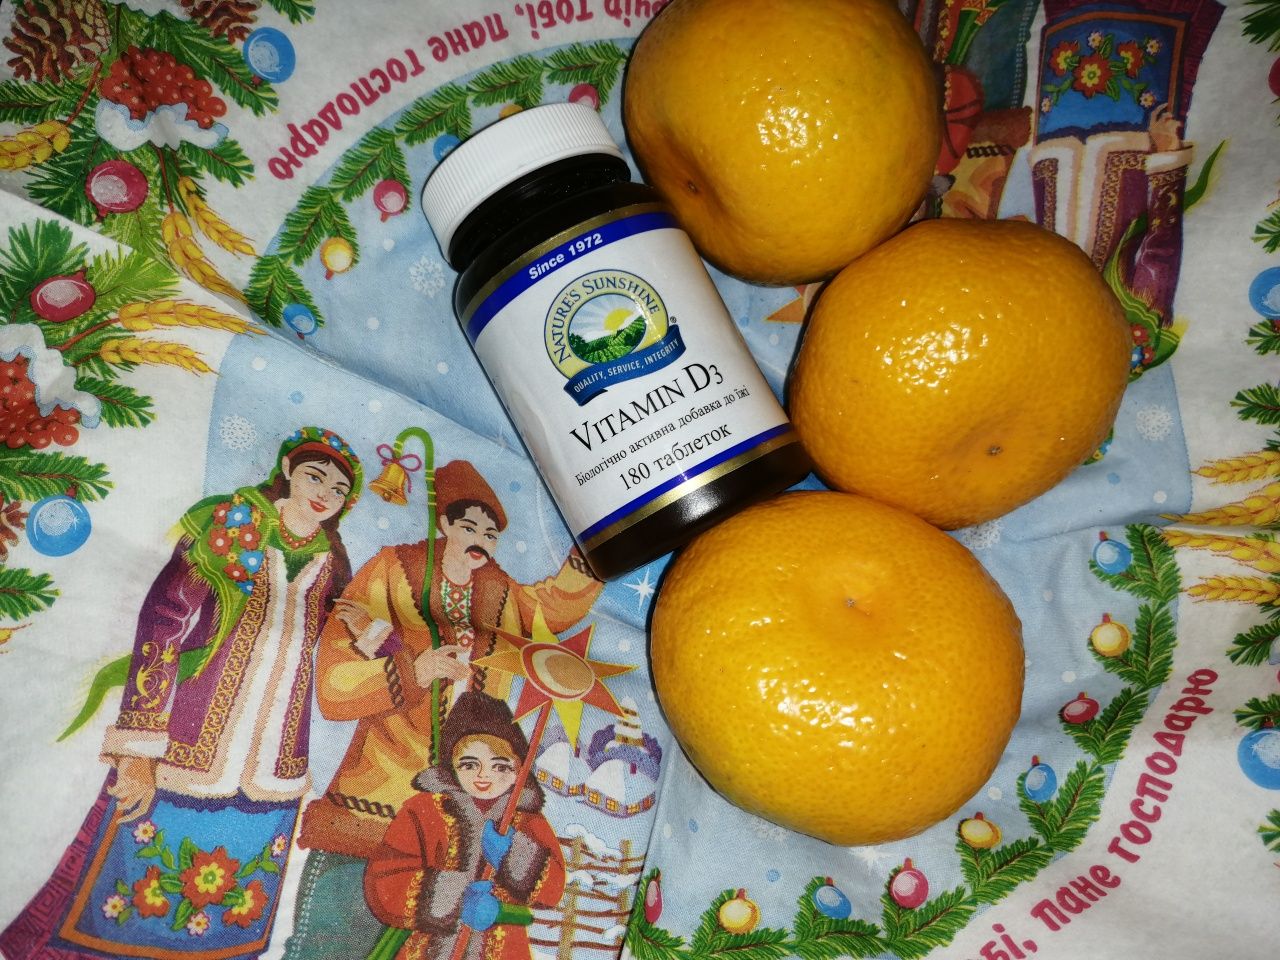 Витамин Д3 НСП 180 жевательных сердечек со вкусом тропических фруктов